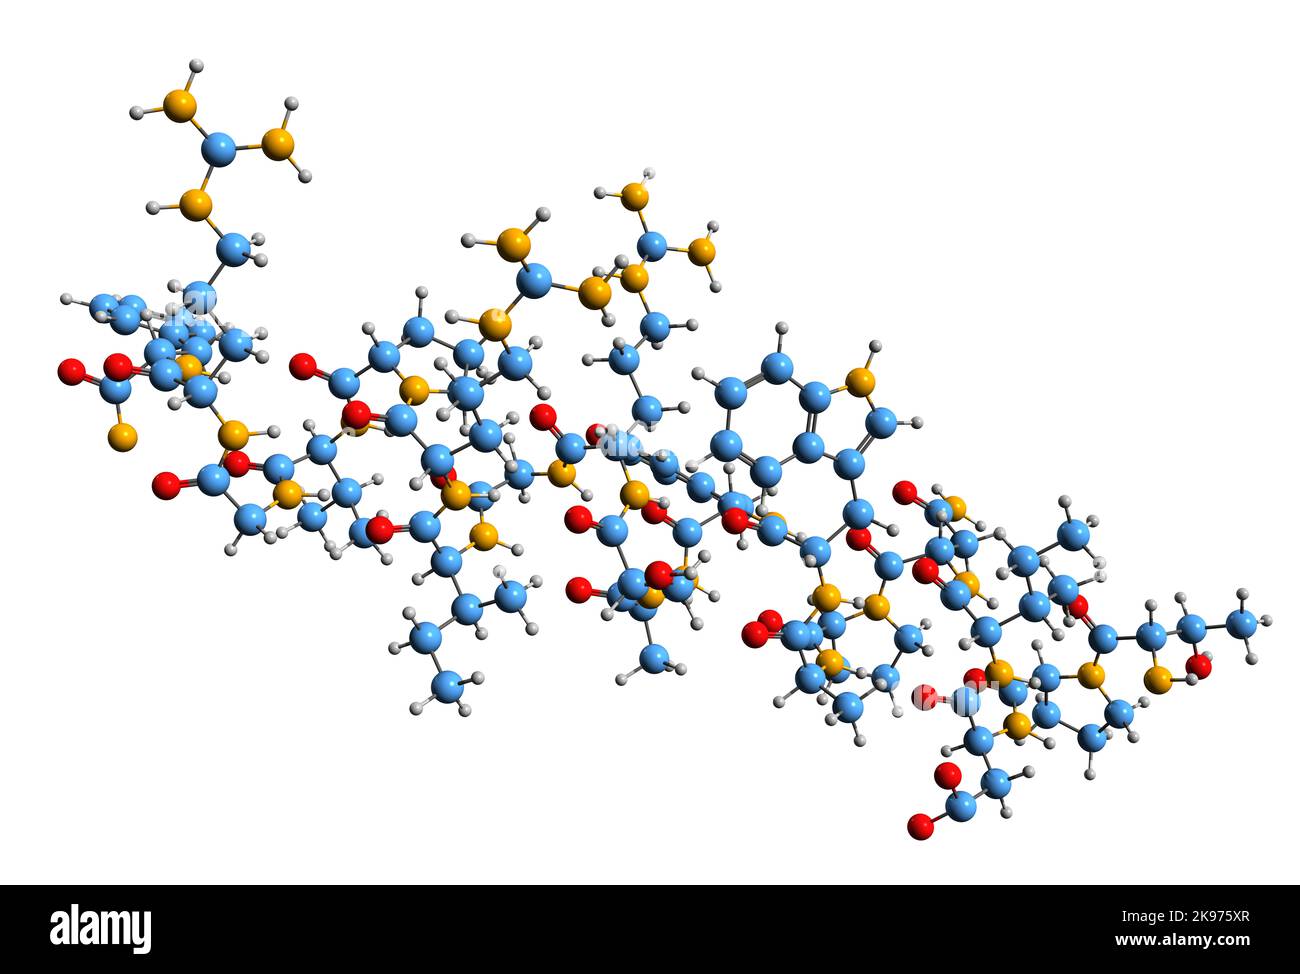 3D Bild der Prolaktin-freisetzenden Peptid-Skelettformel - molekularchemische Struktur des Peptid-Hormons, isoliert auf weißem Hintergrund Stockfoto